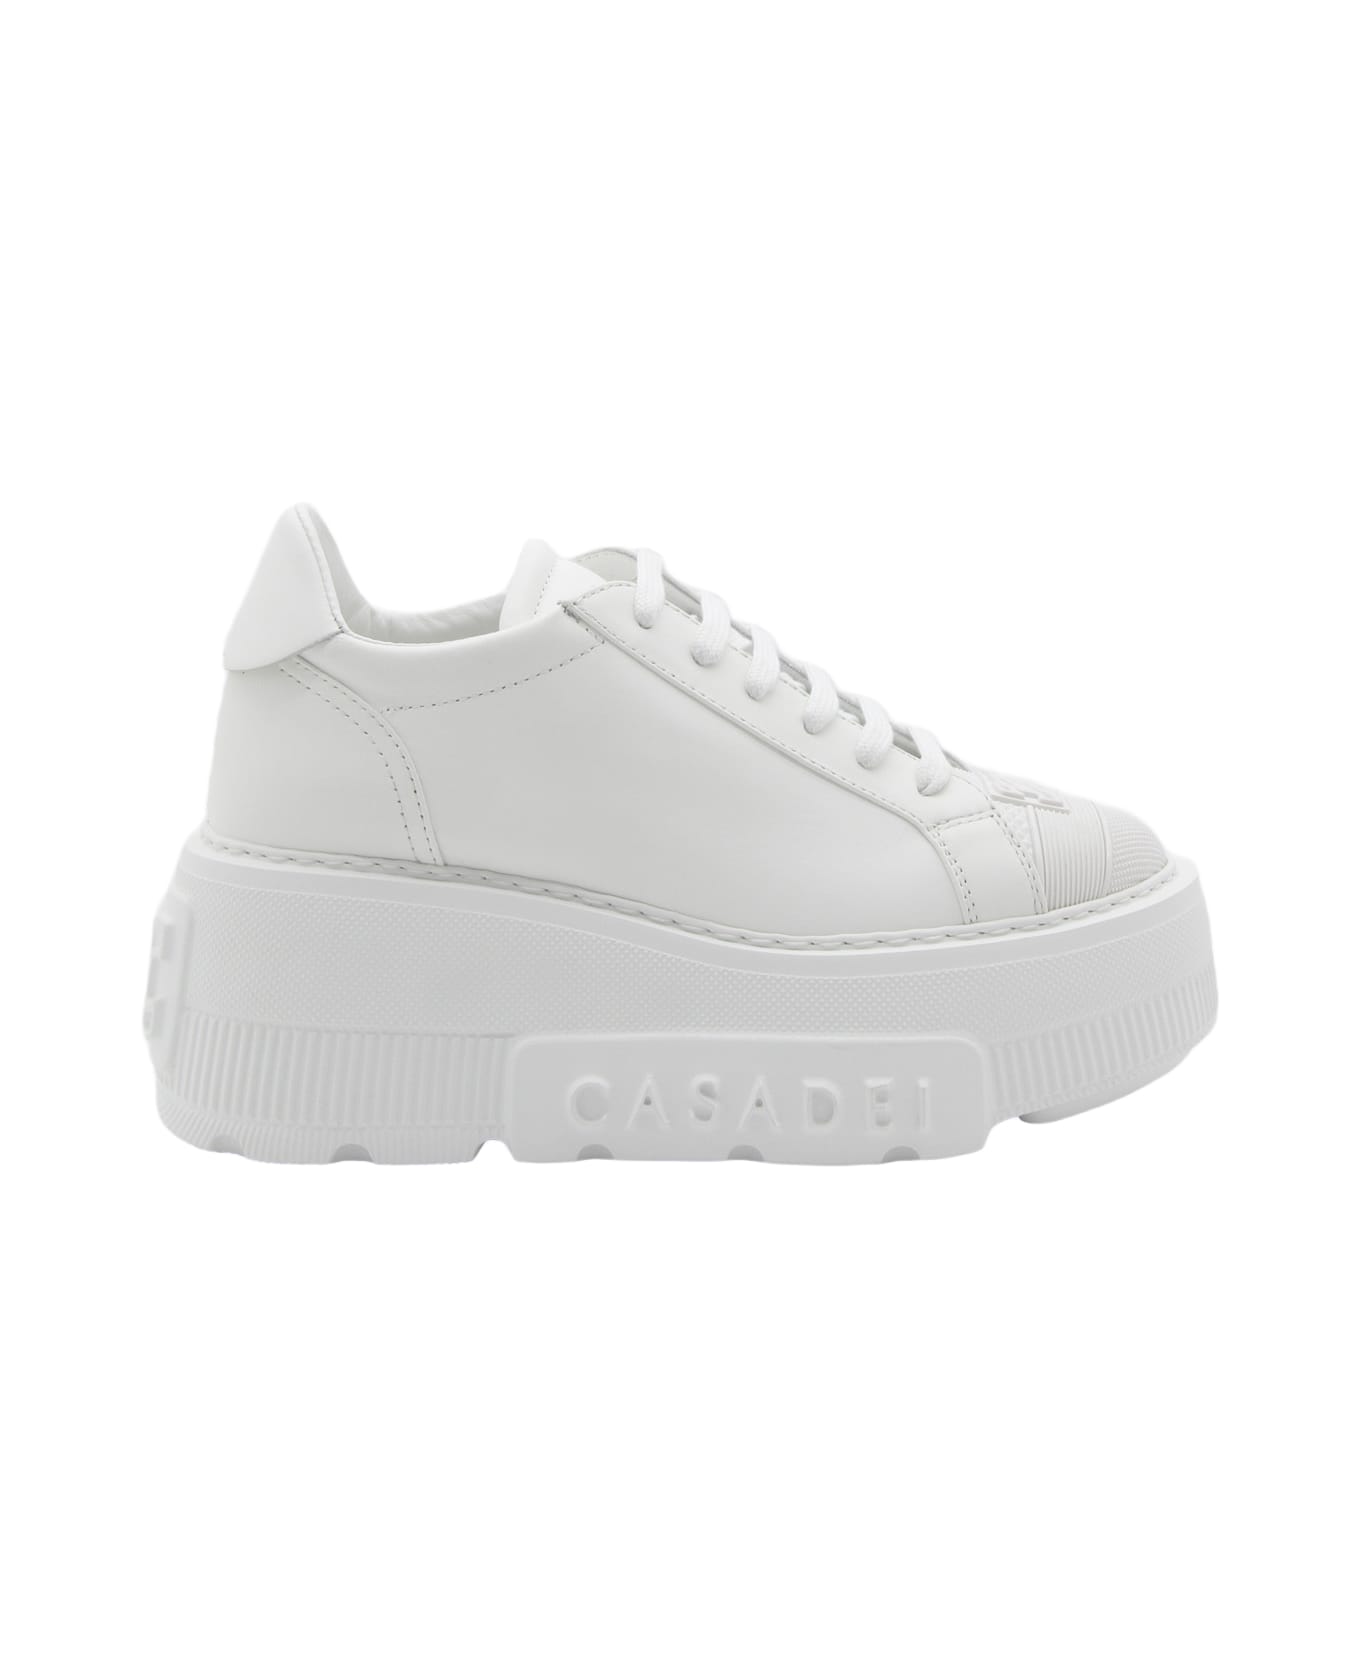 Casadei White Leather Nexus Sneakers - White